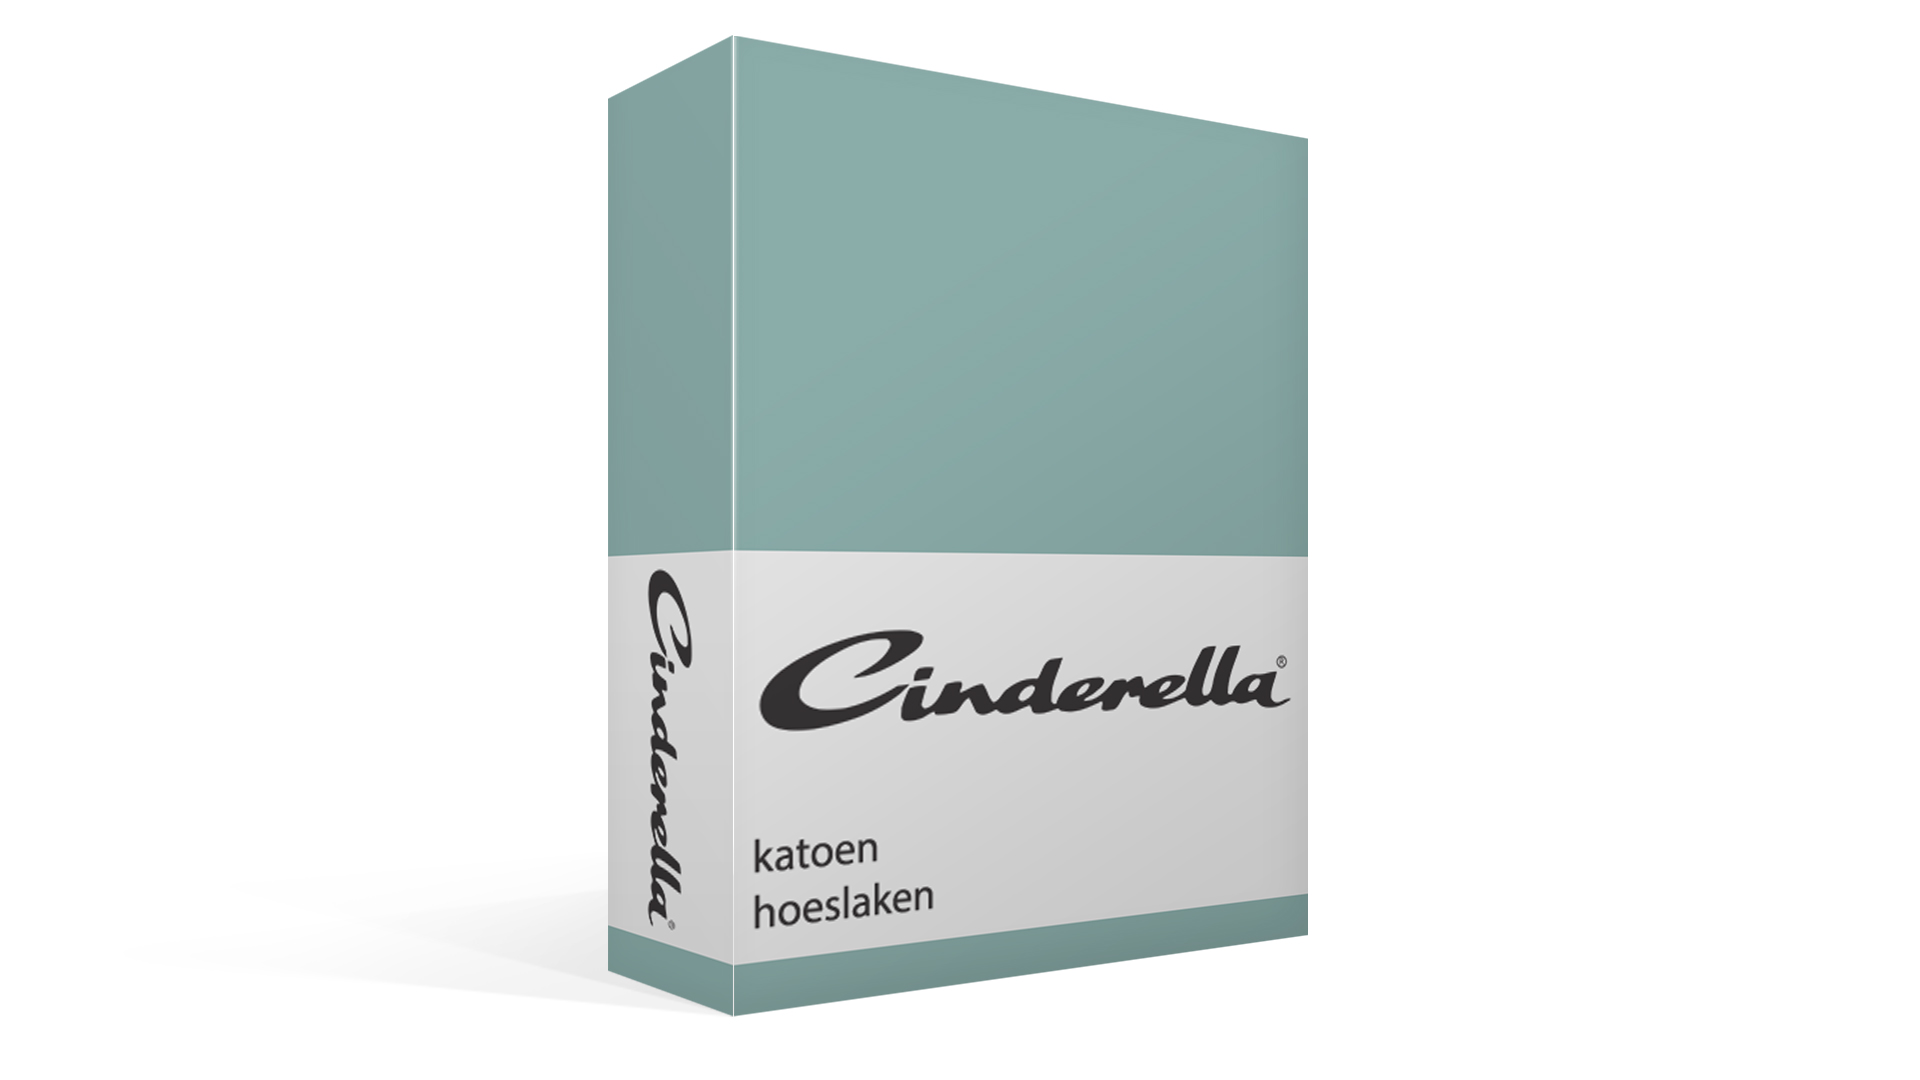 Cinderella katoen hoeslaken - mineral green